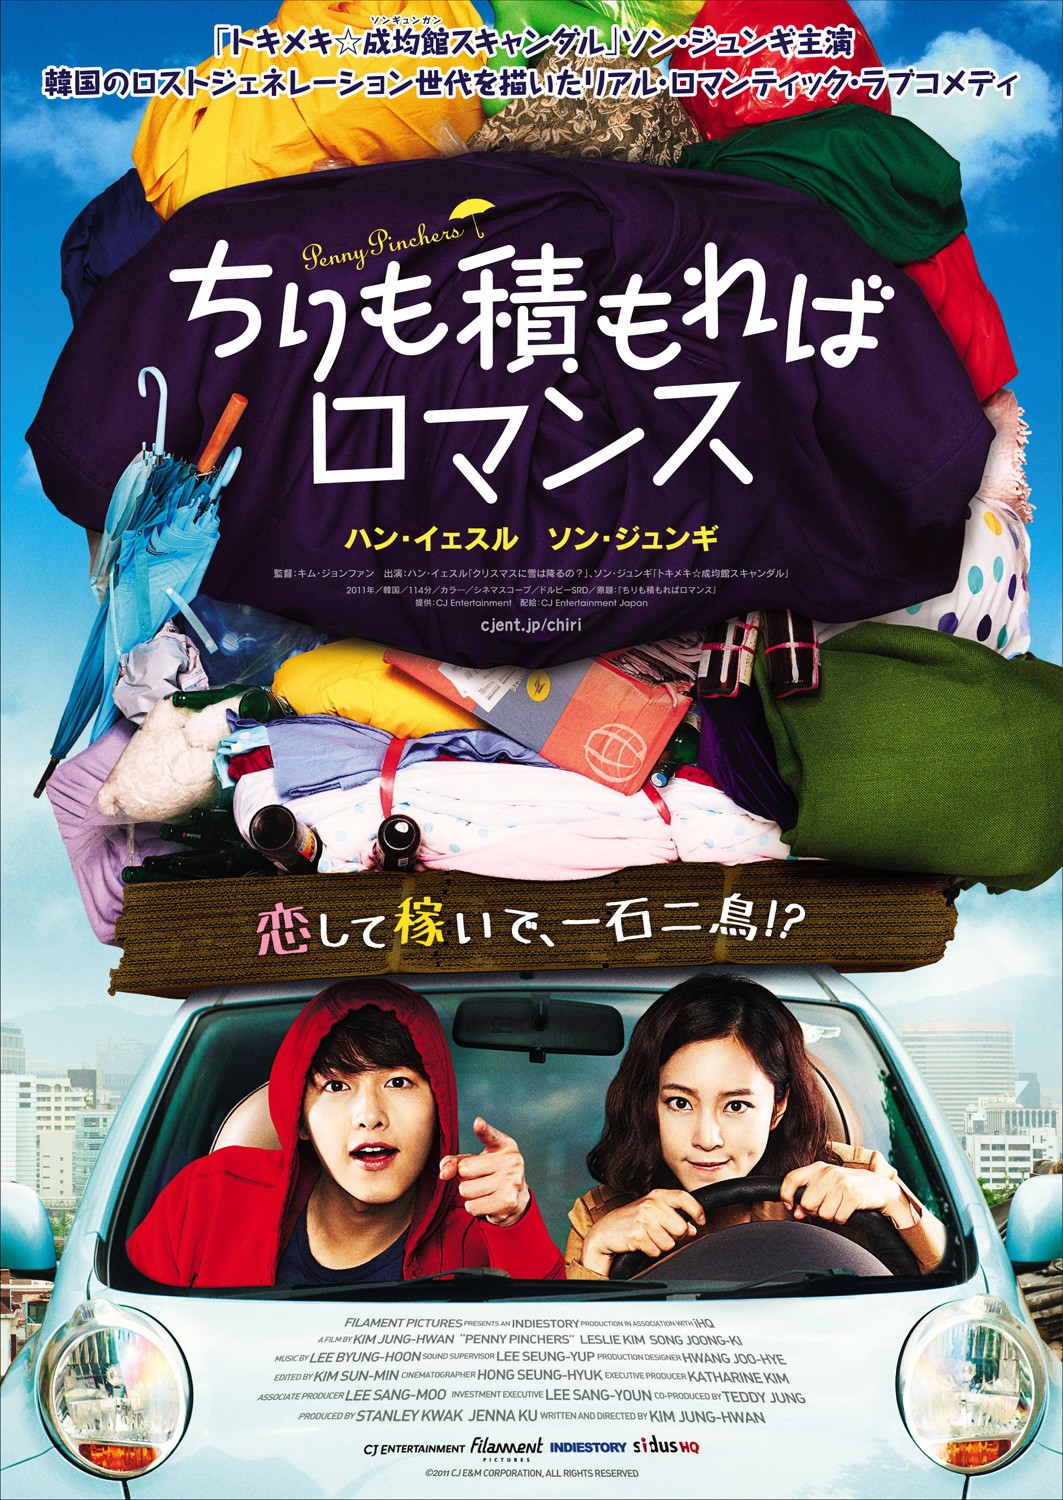 Extra Large Movie Poster Image for Ti-kkeul-mo-a Ro-maen-seu 